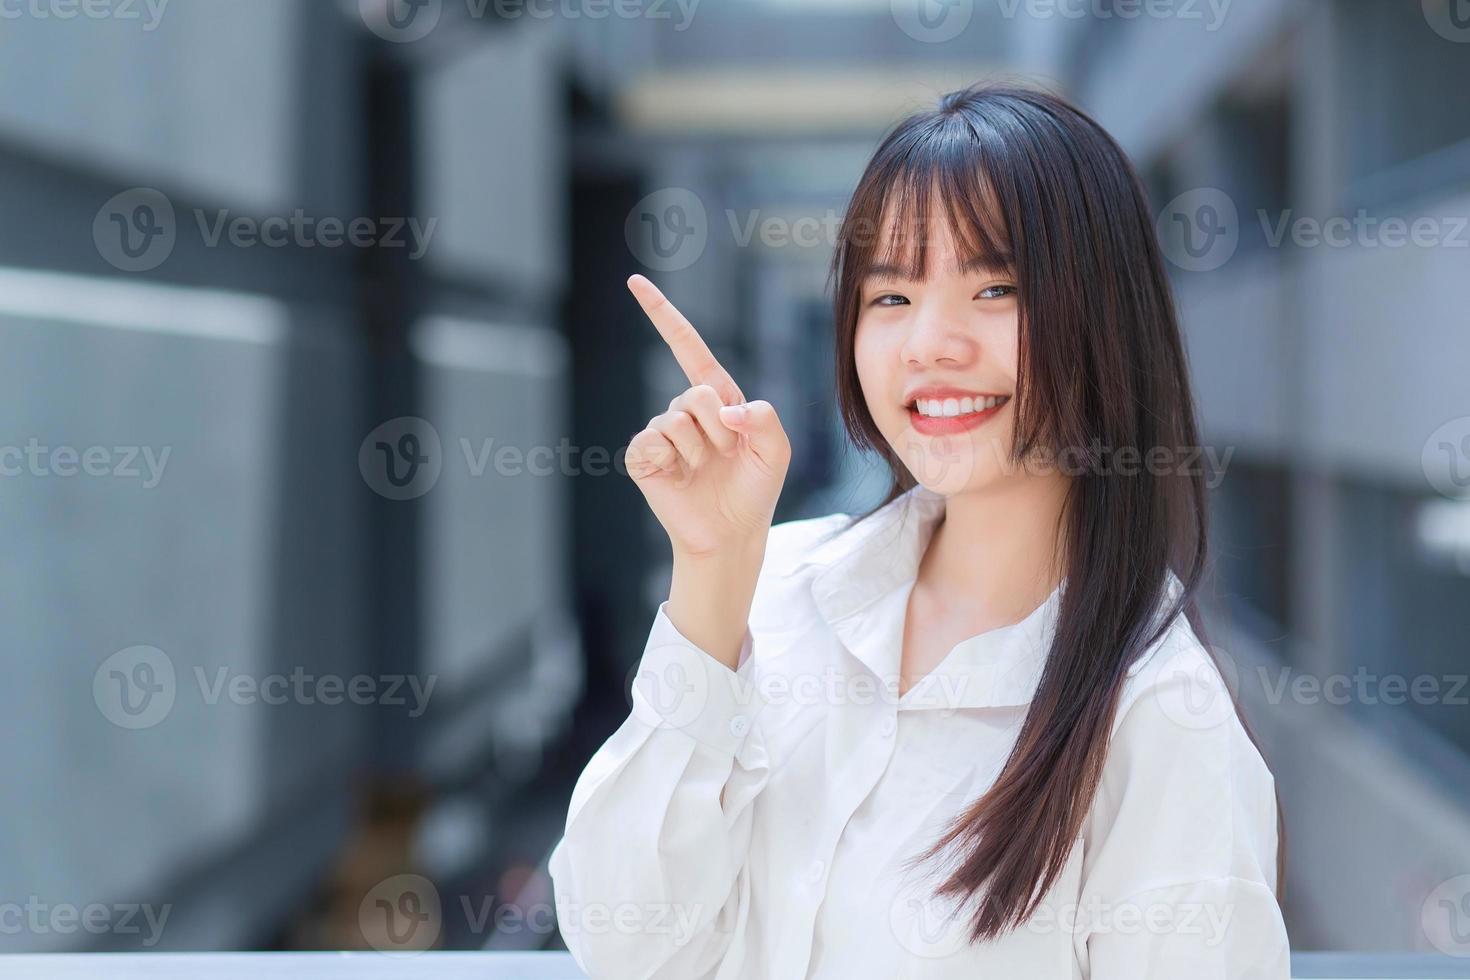 professionell ung asiatisk arbetande kvinna som bär vit skjorta pekar handen för att presentera något medans utomhus i staden med en kontorsbyggnad i bakgrunden. foto